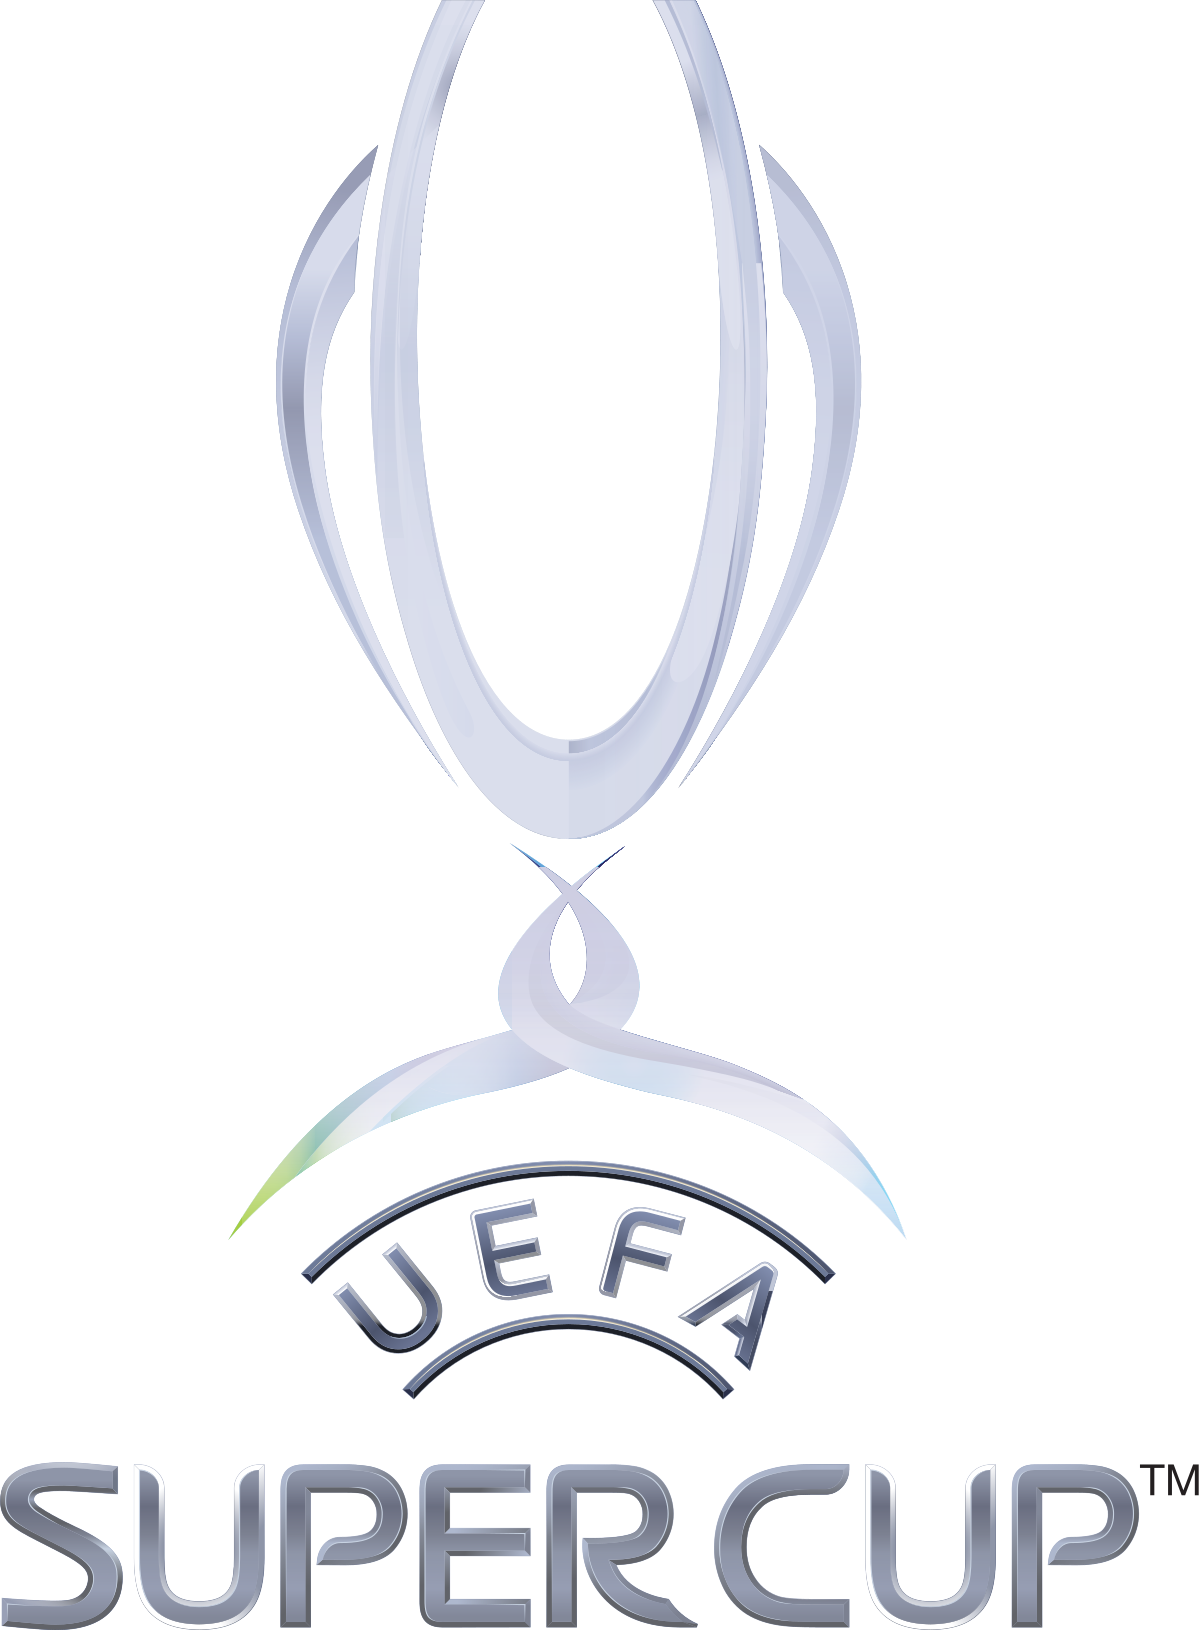 UEFA Super Cup / Супер кубок UEFA